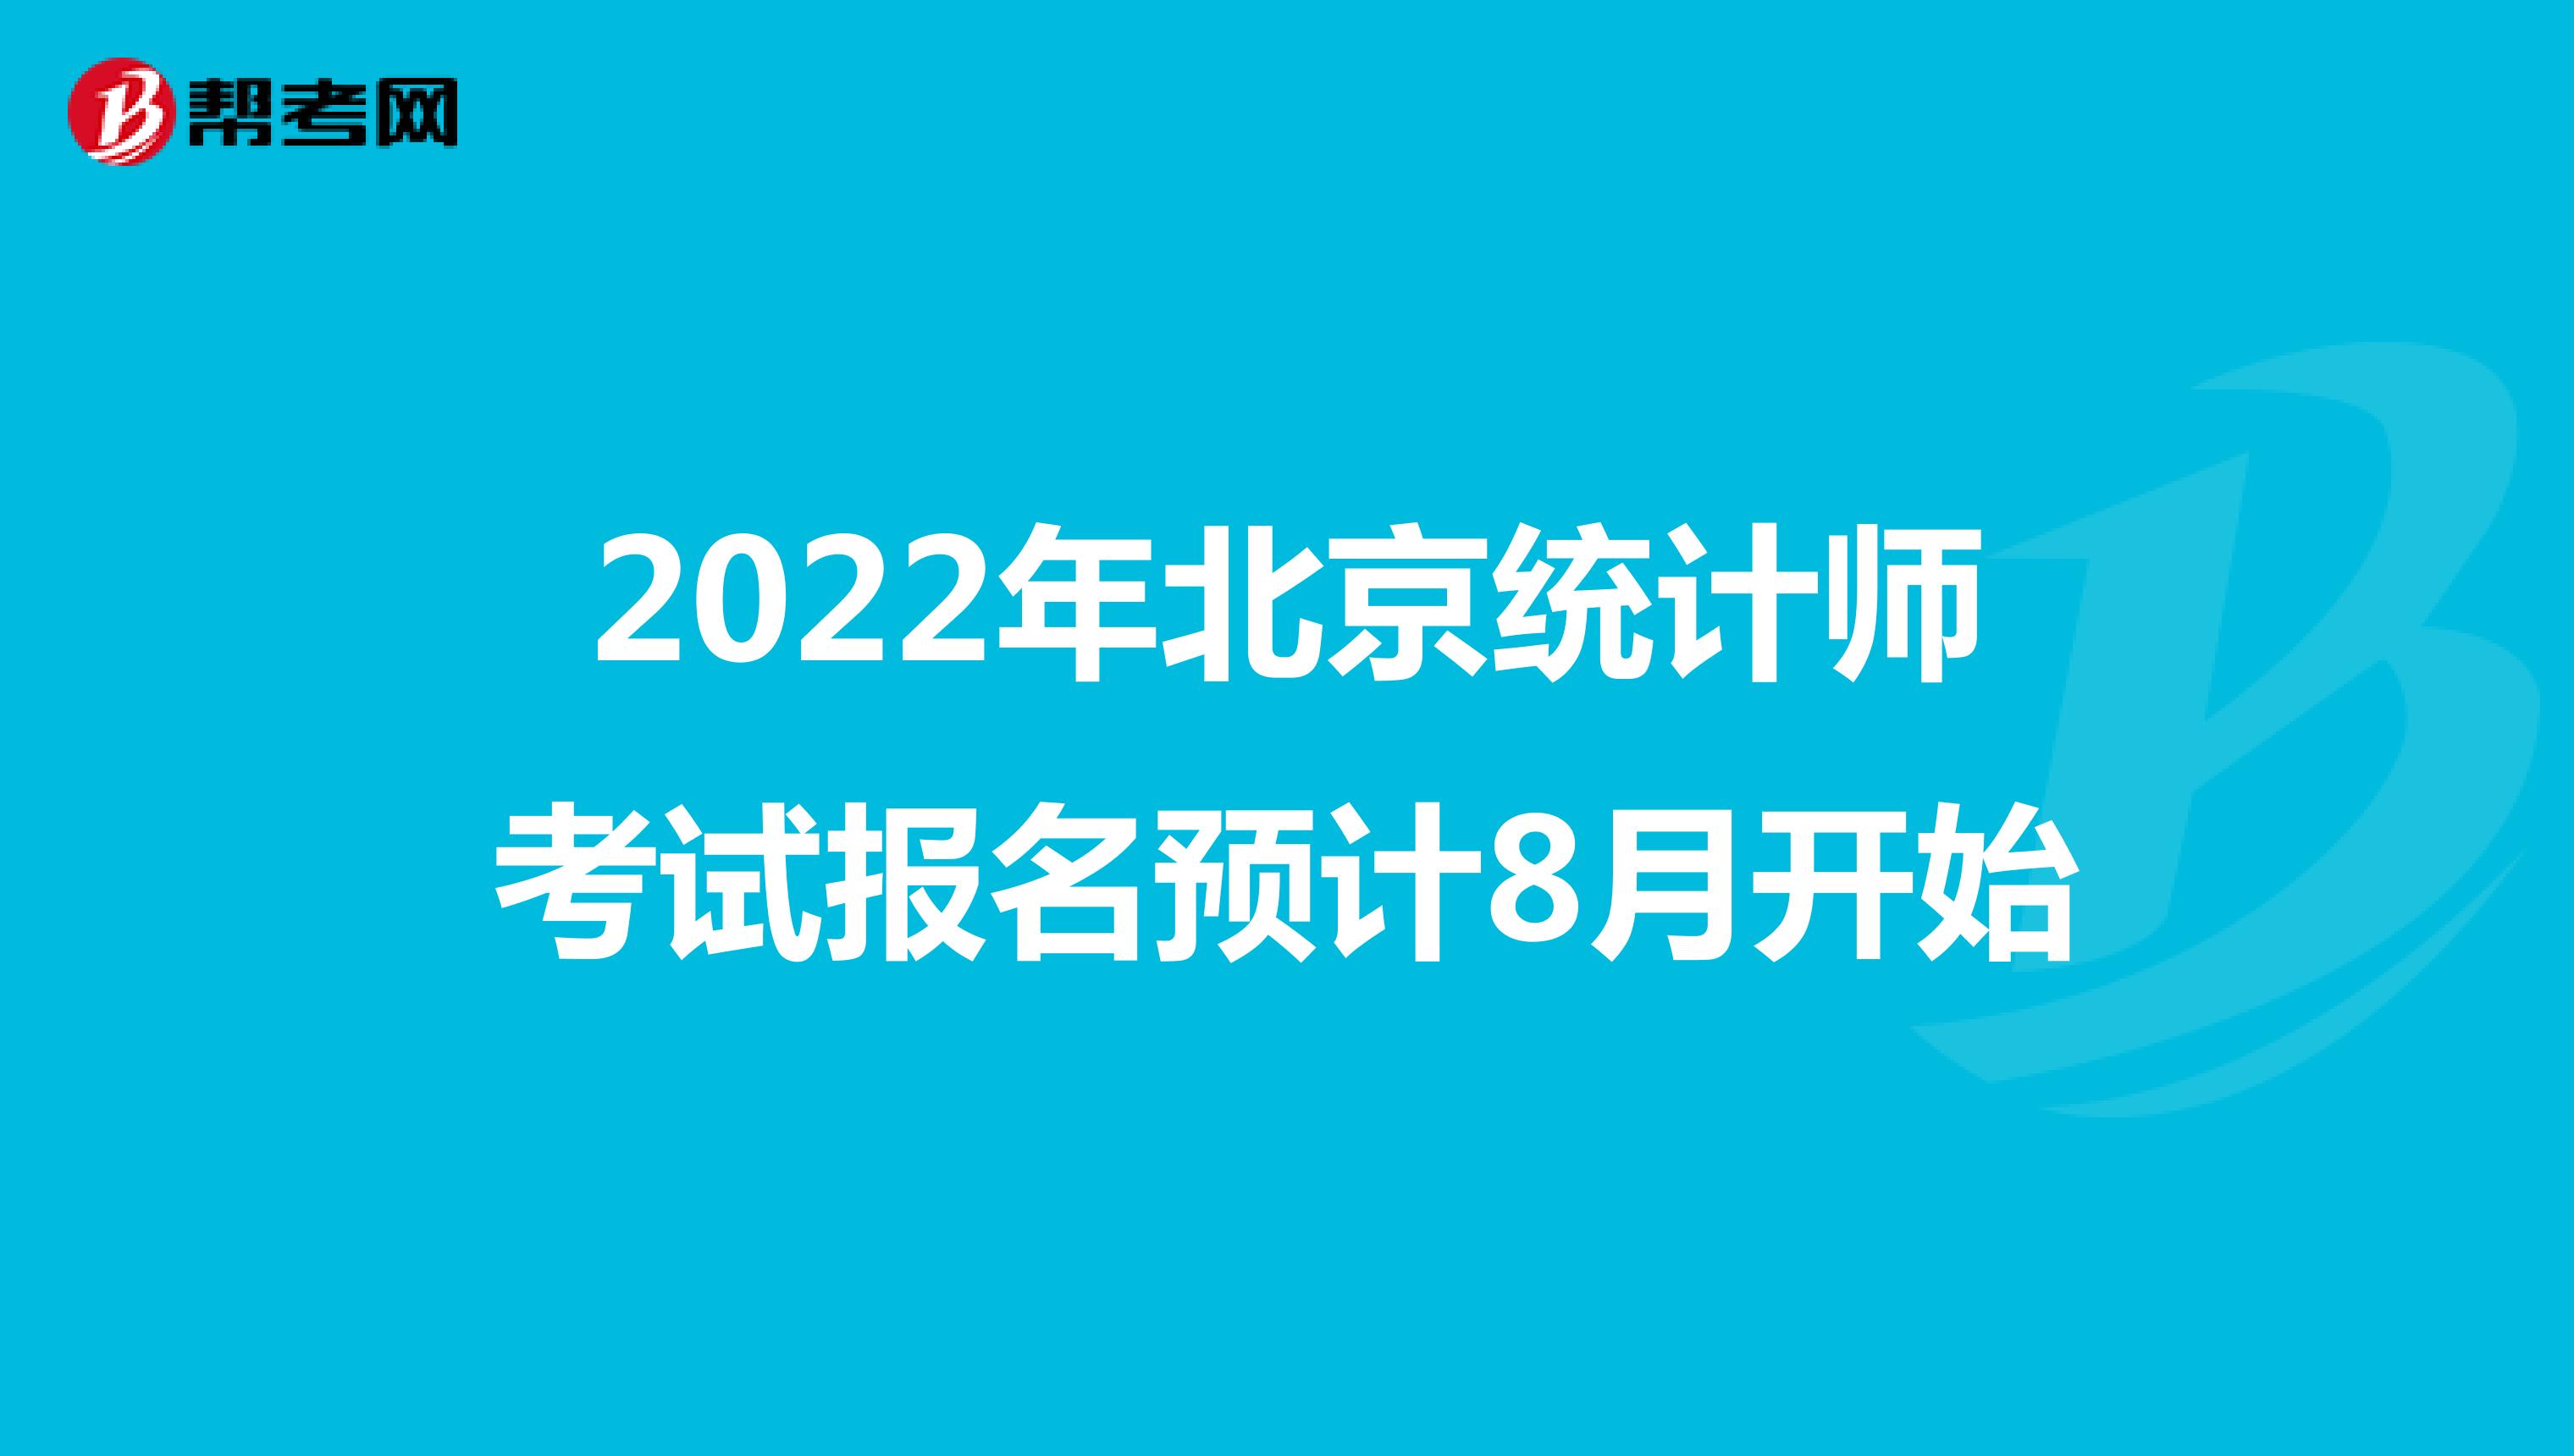 2022年北京统计师考试报名预计8月开始